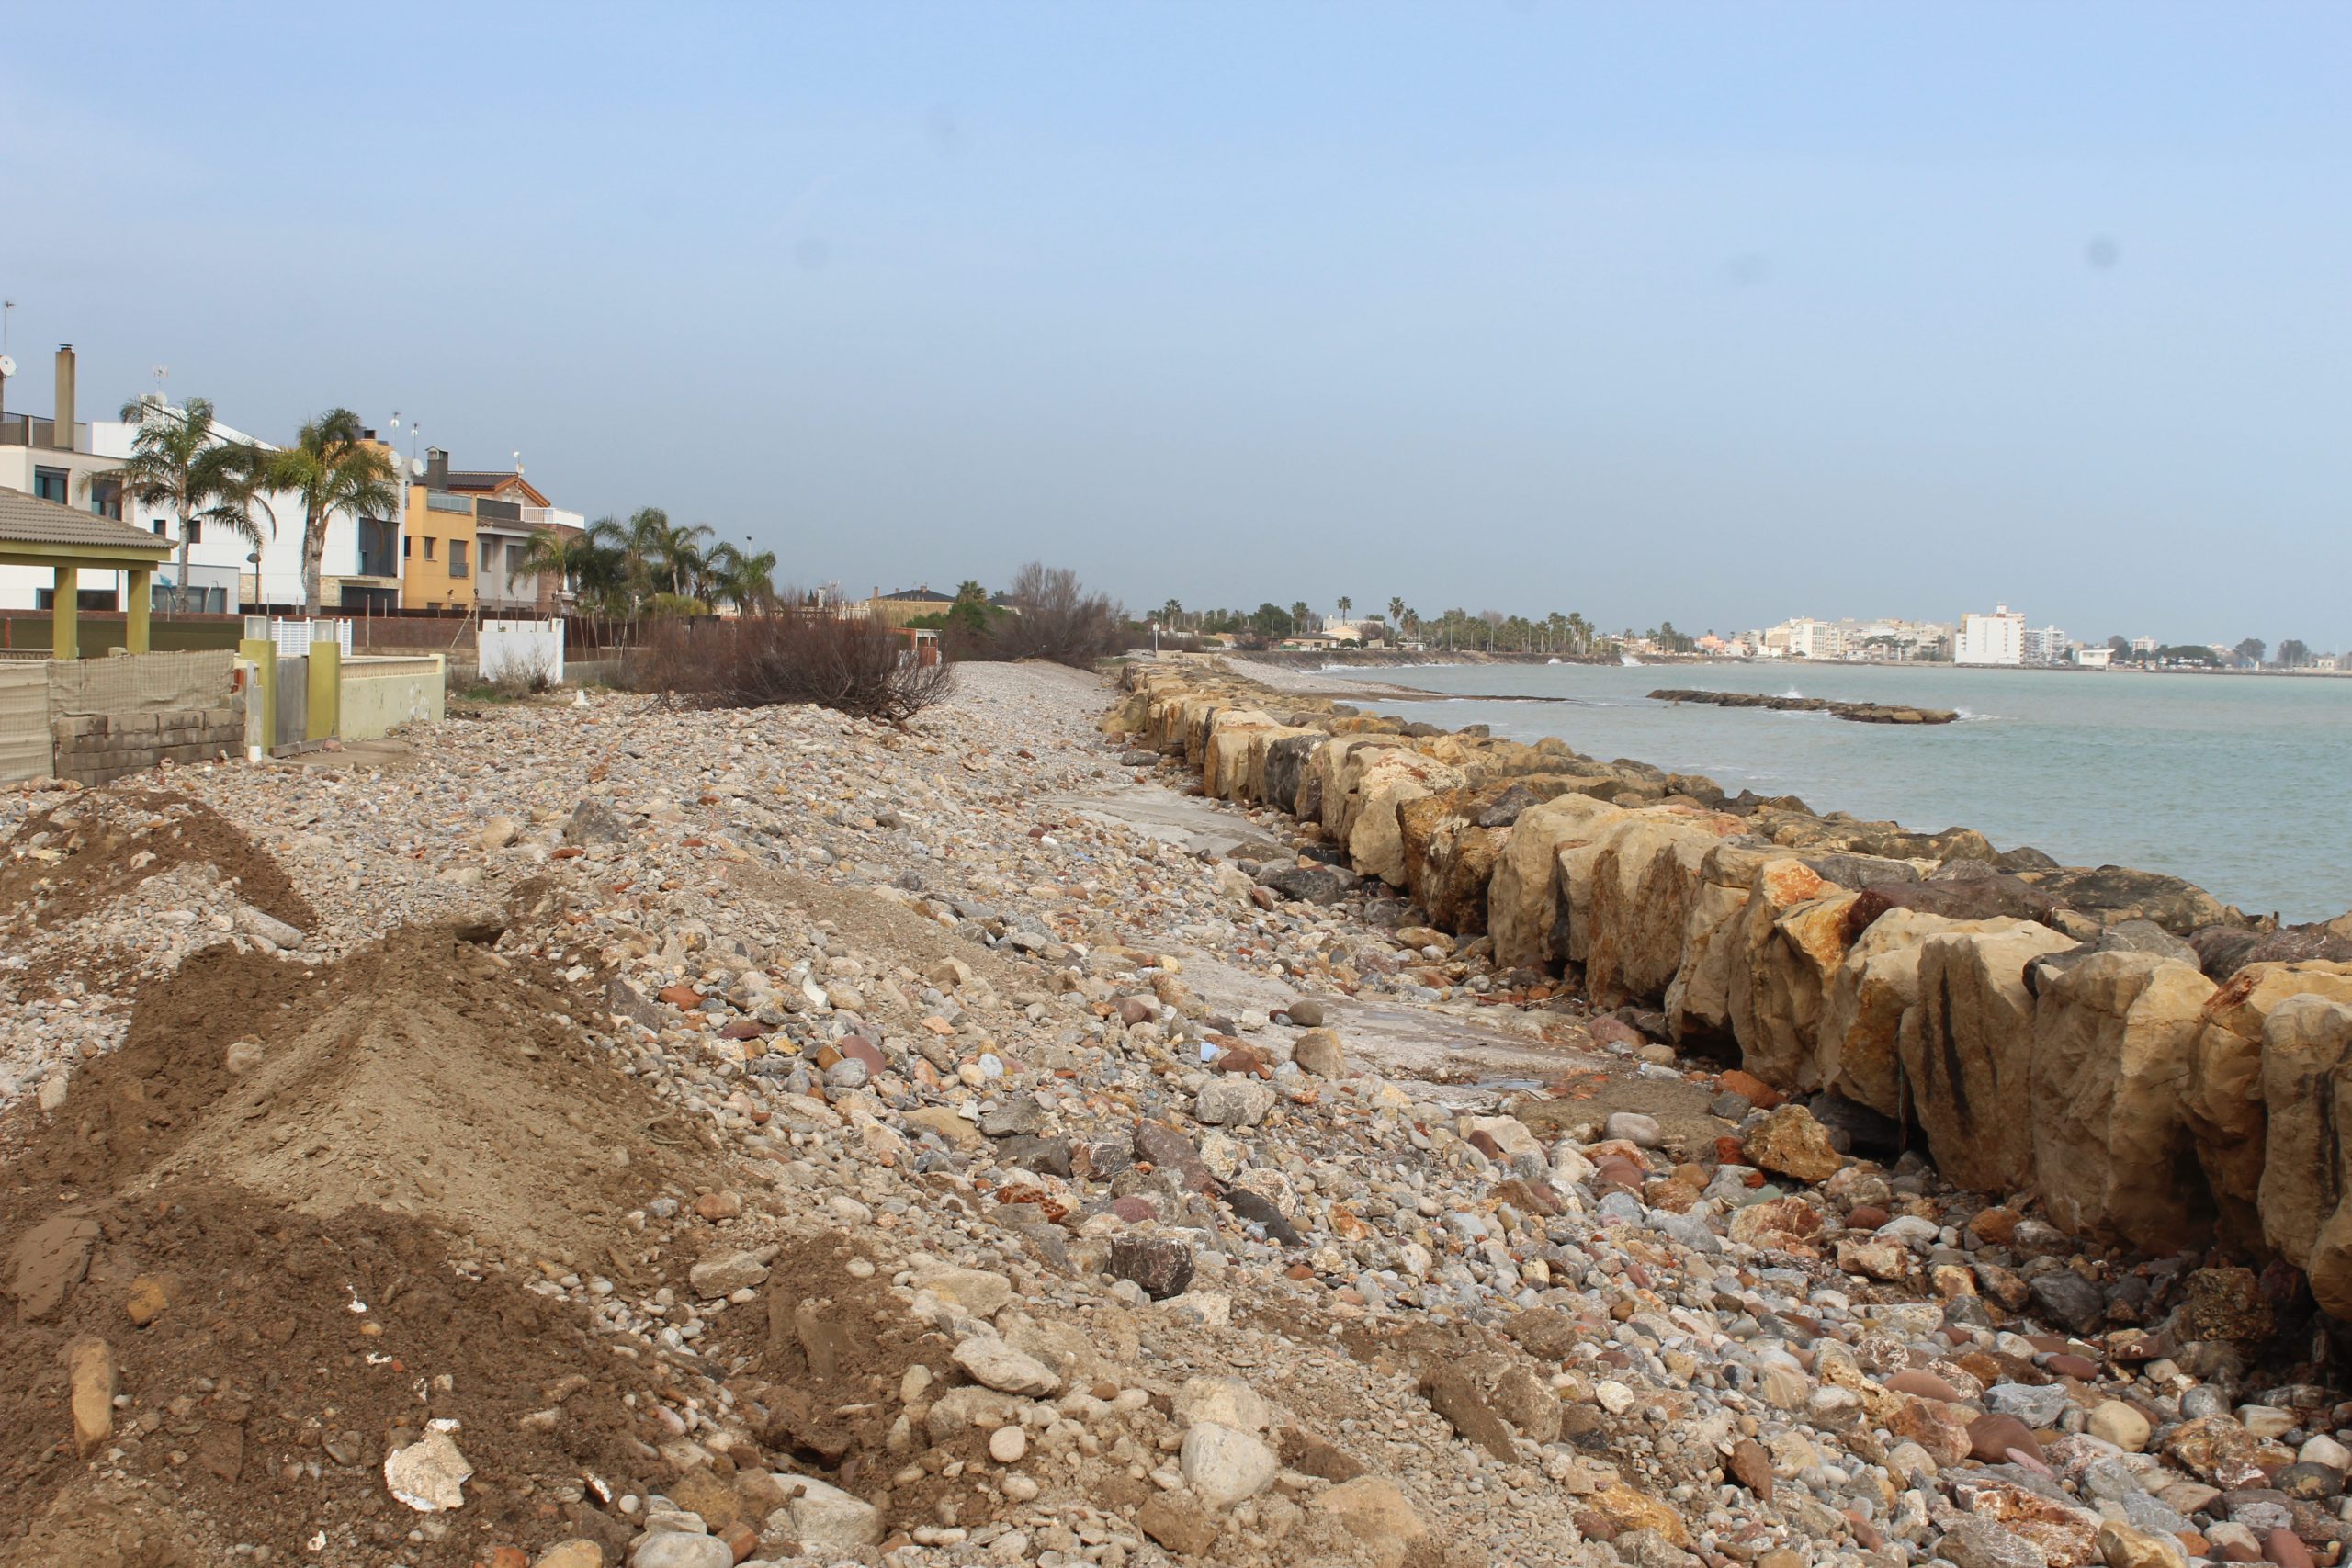 Costas saca a información pública el proyecto básico de actualización de regeneración de la playa al sur del Puerto de Burriana